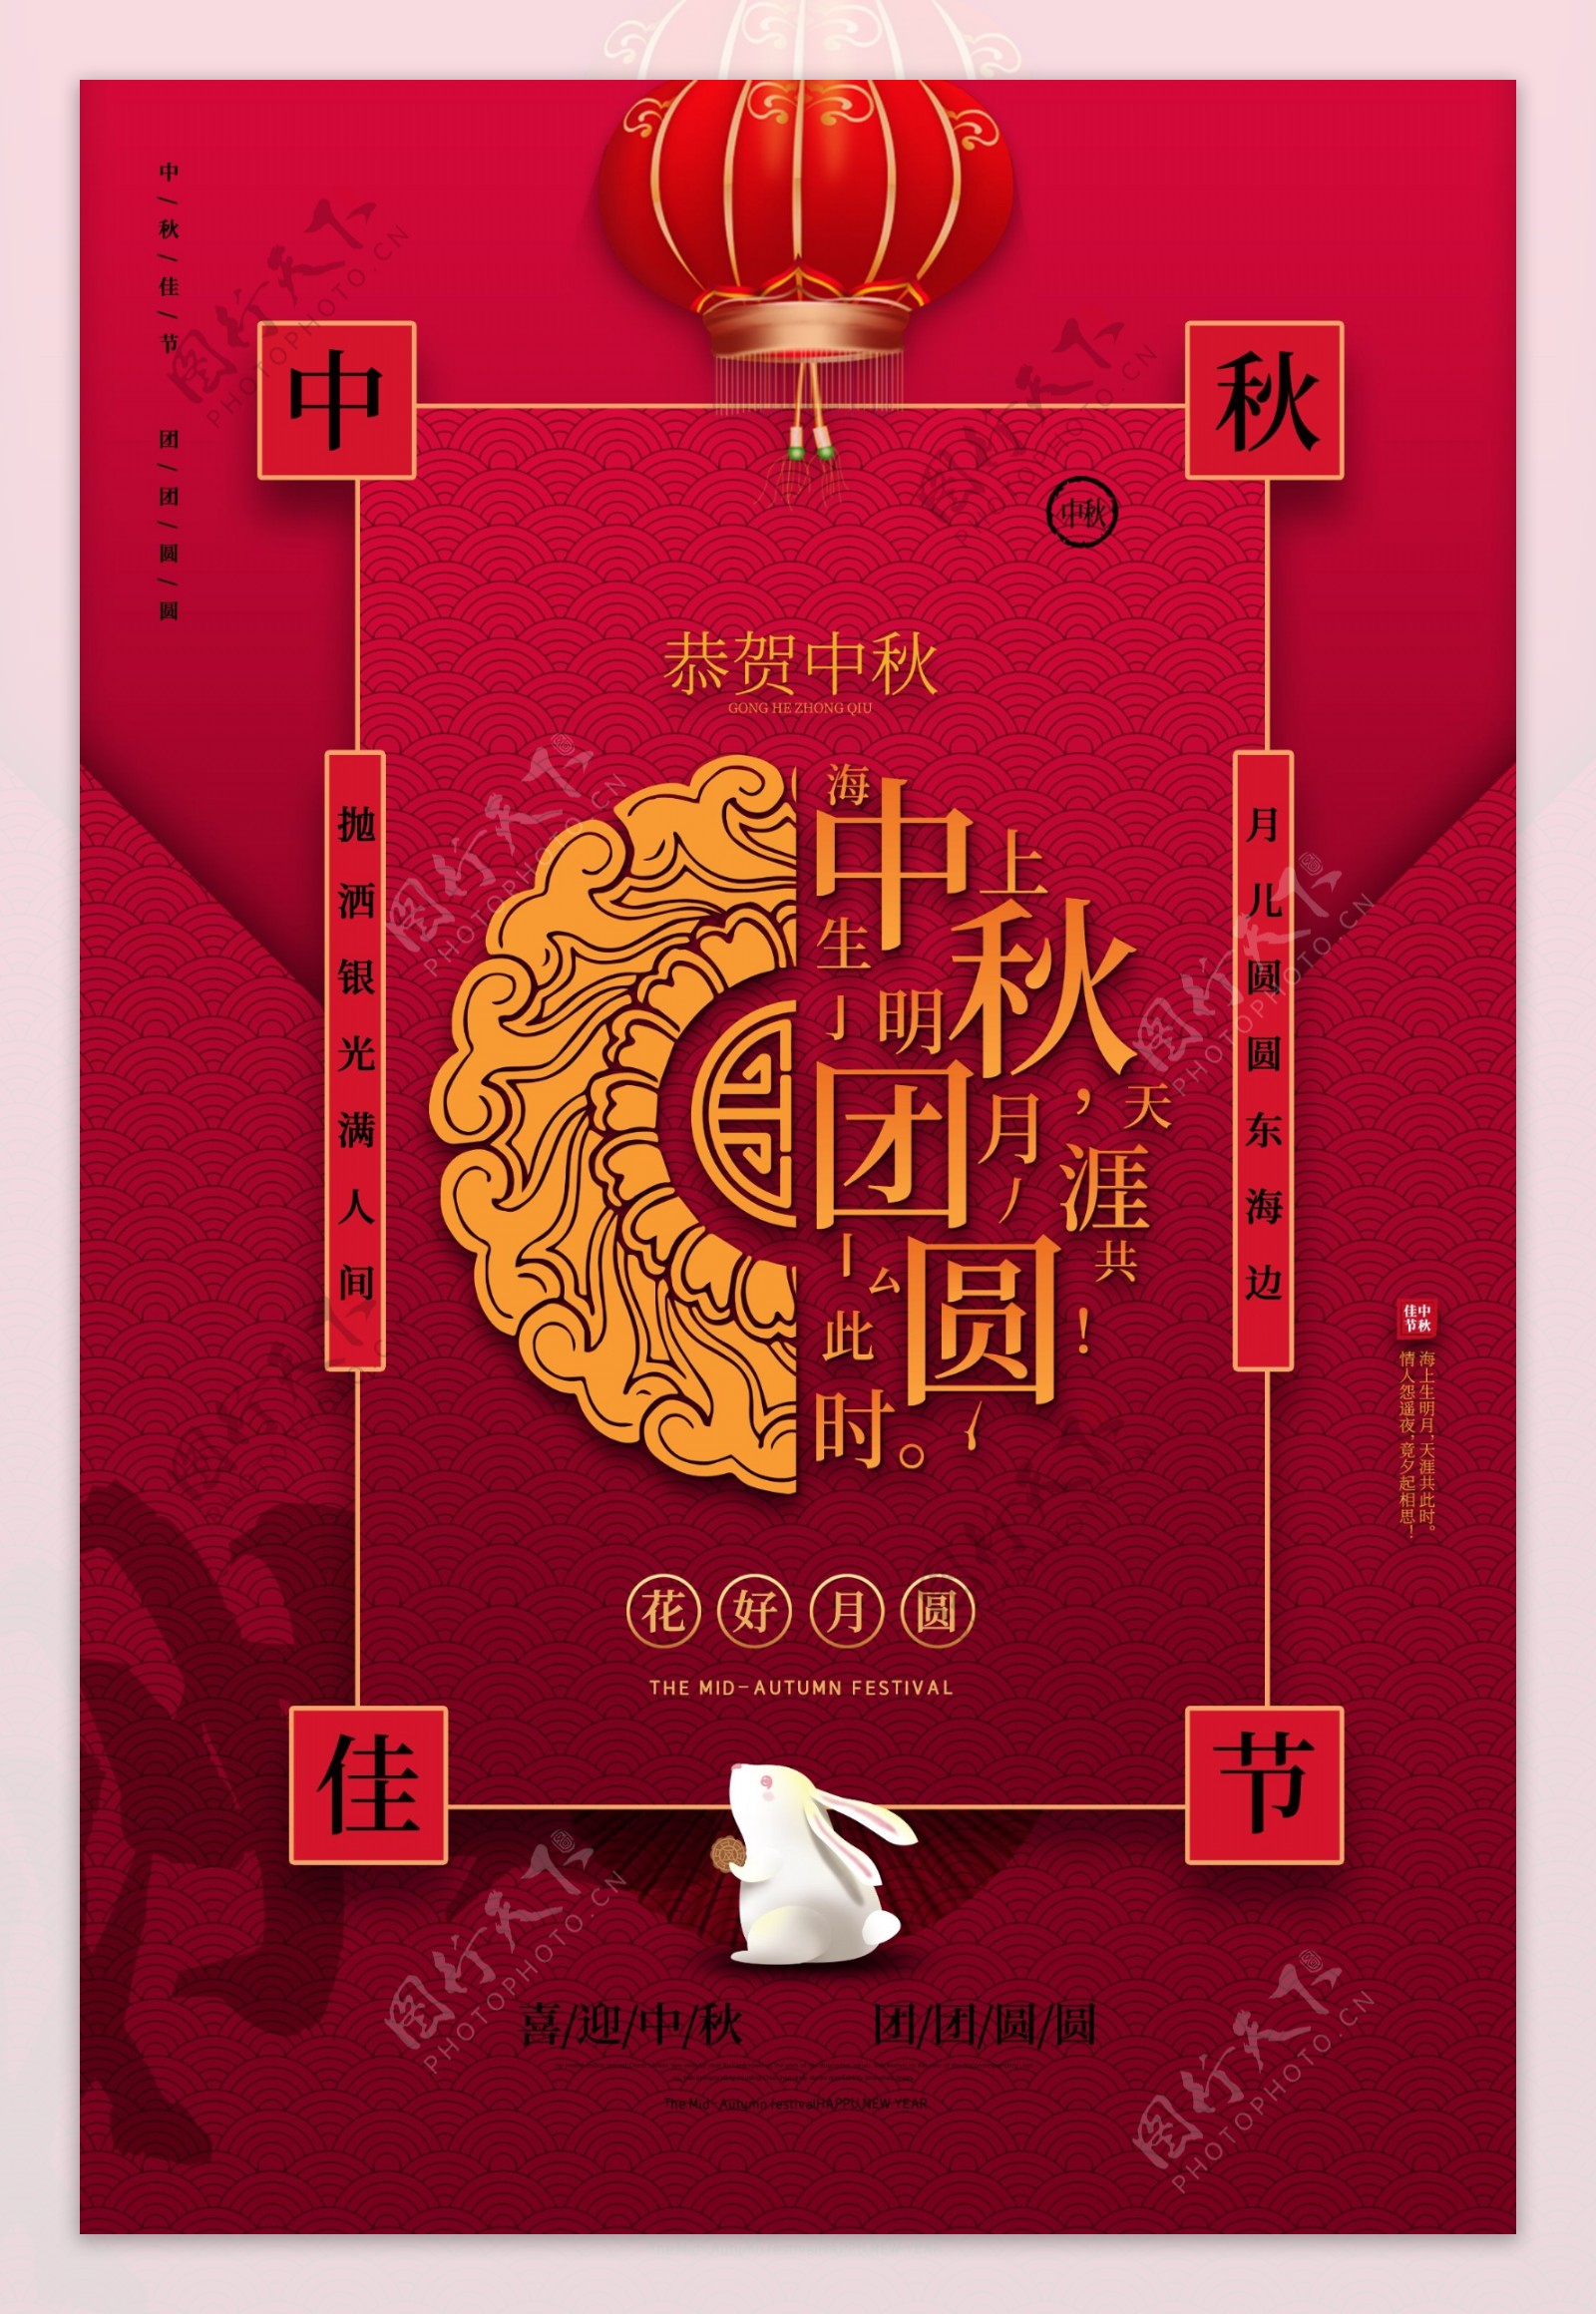 中秋传统节日宣传海报素材图片